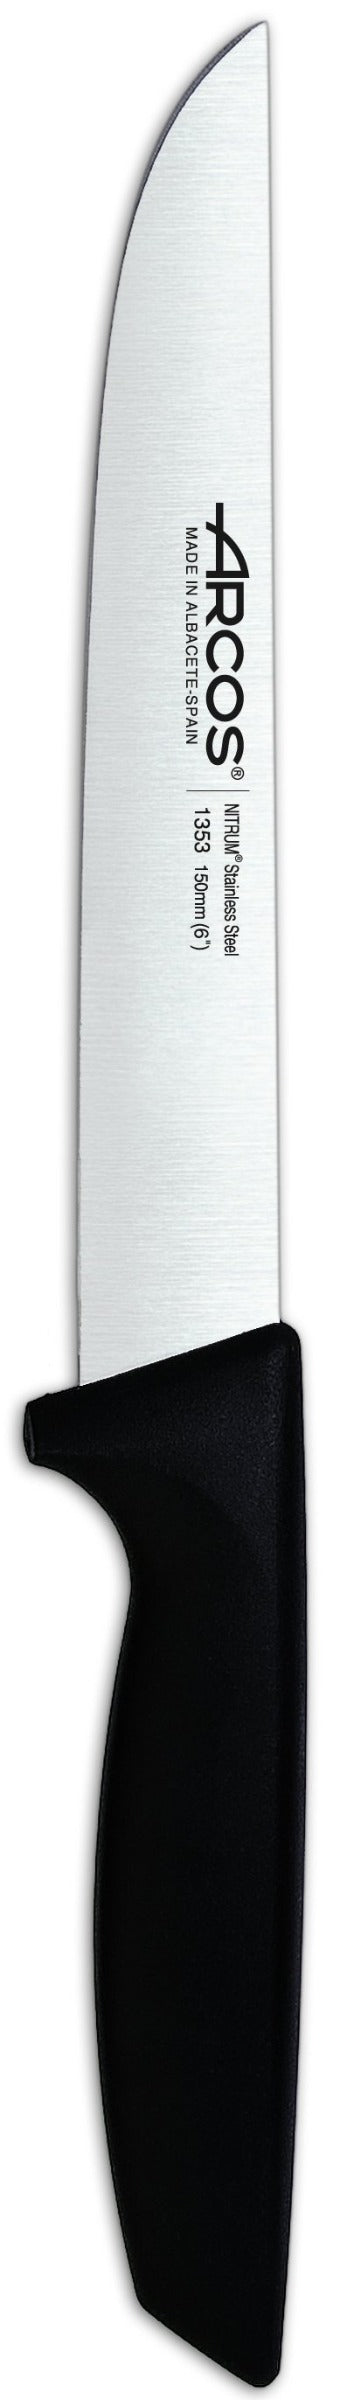 Cuchillo Cocina 15 cm - Niza ARCOS